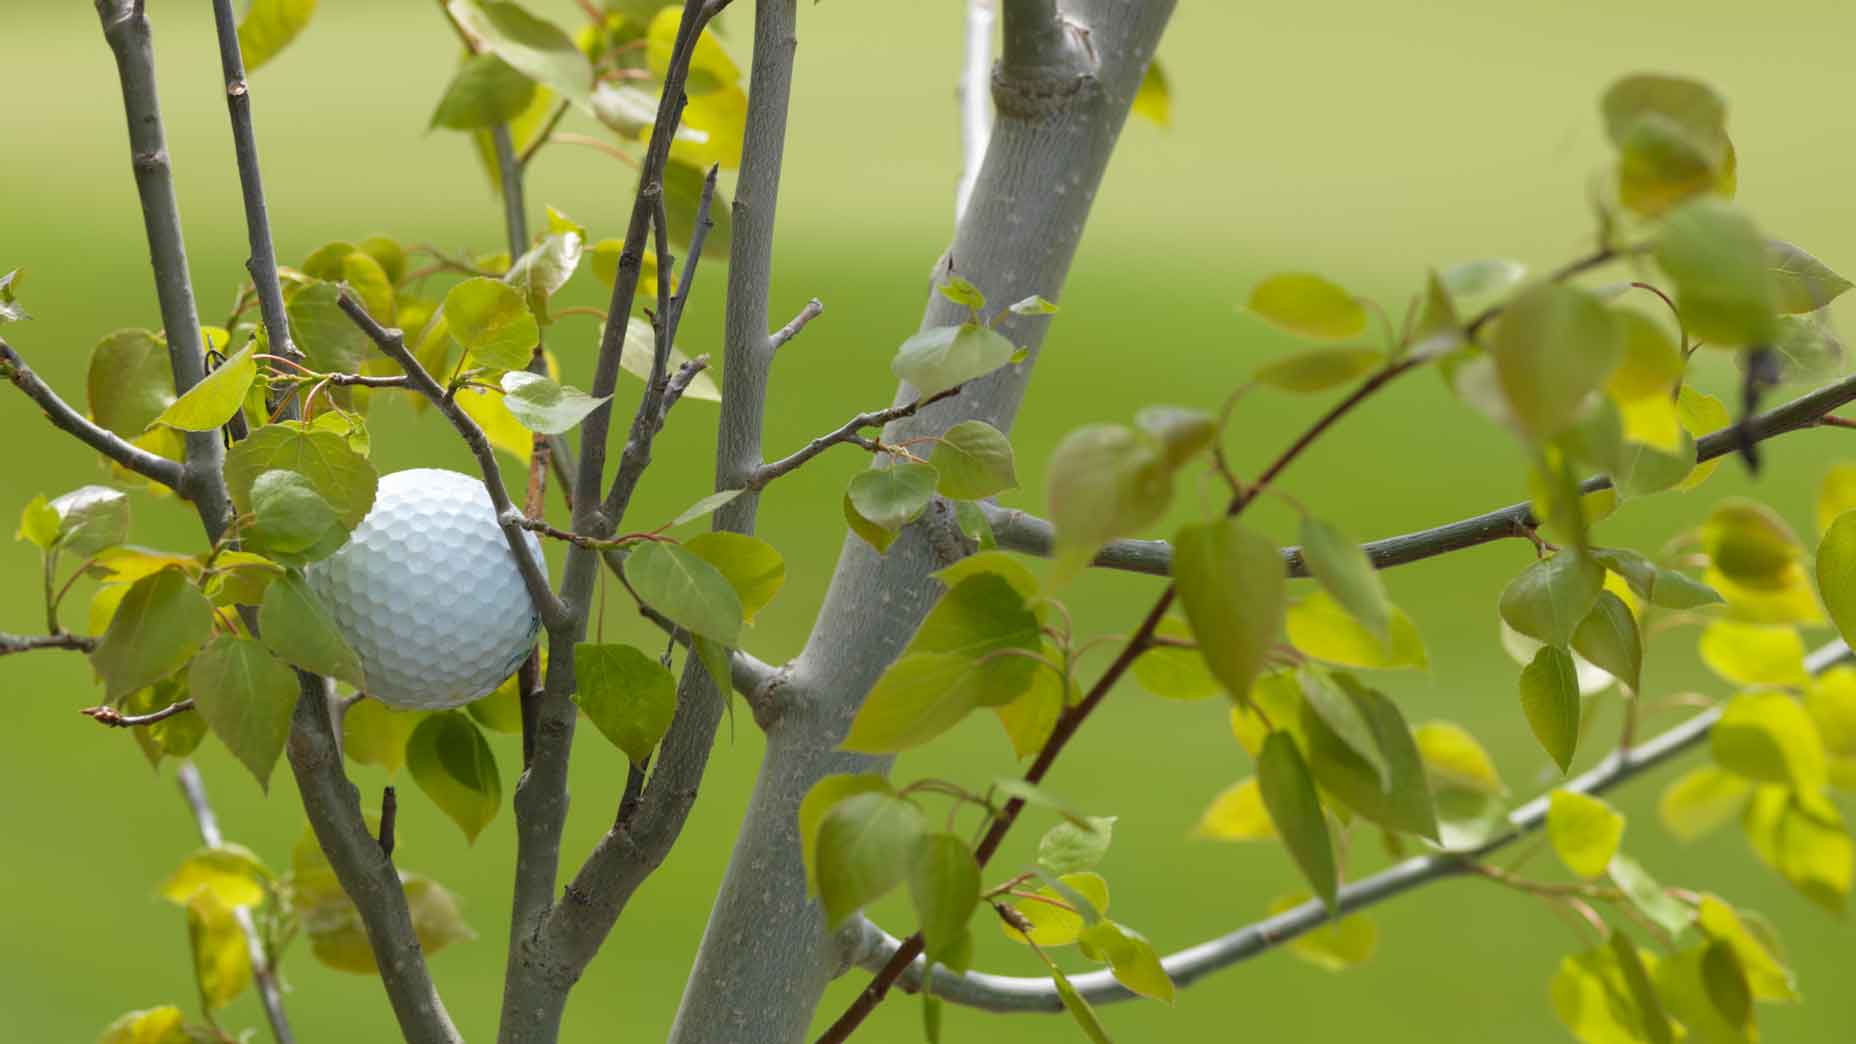 Luật golf: Bóng đậu trên cành cây ngoài OB, có được tuyên bố bóng không đánh được?